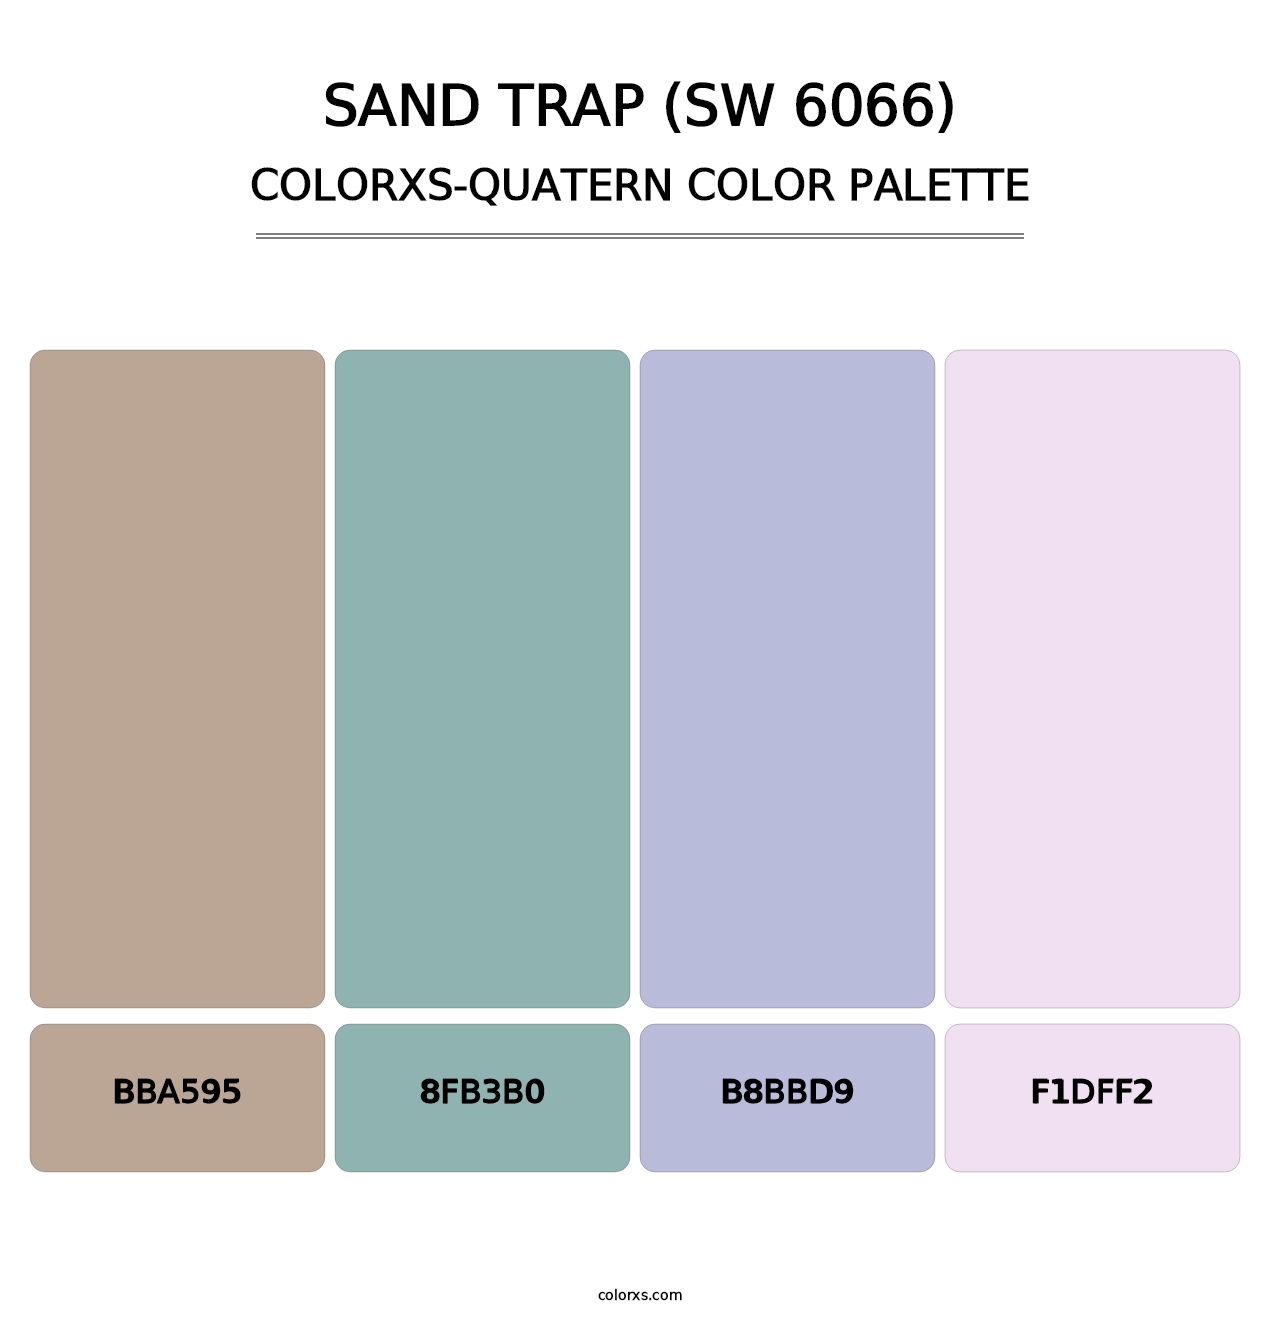 Sand Trap (SW 6066) - Colorxs Quatern Palette